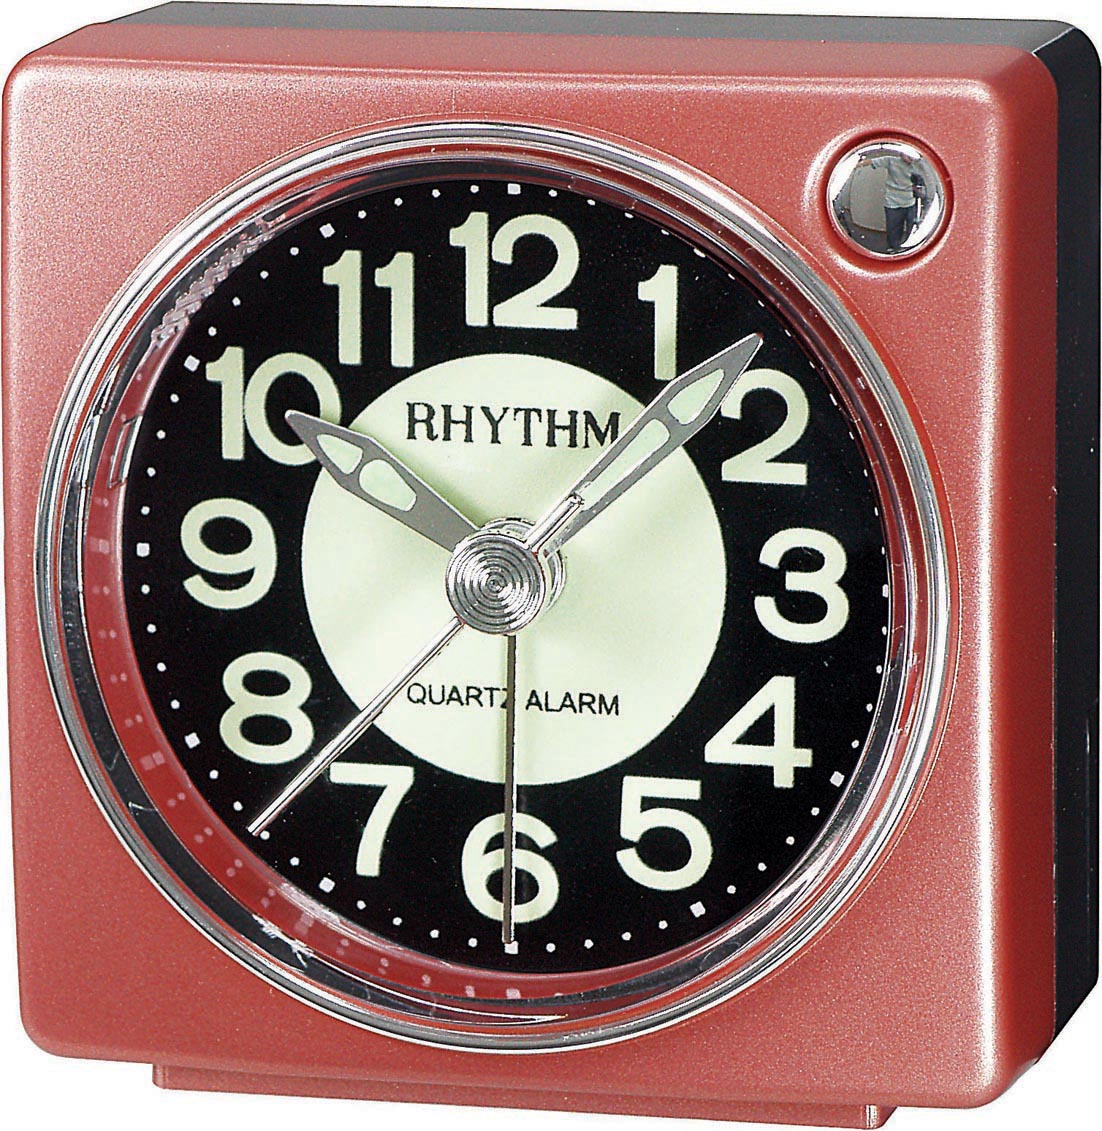 Rhythm alarm clock red CRE823NR01